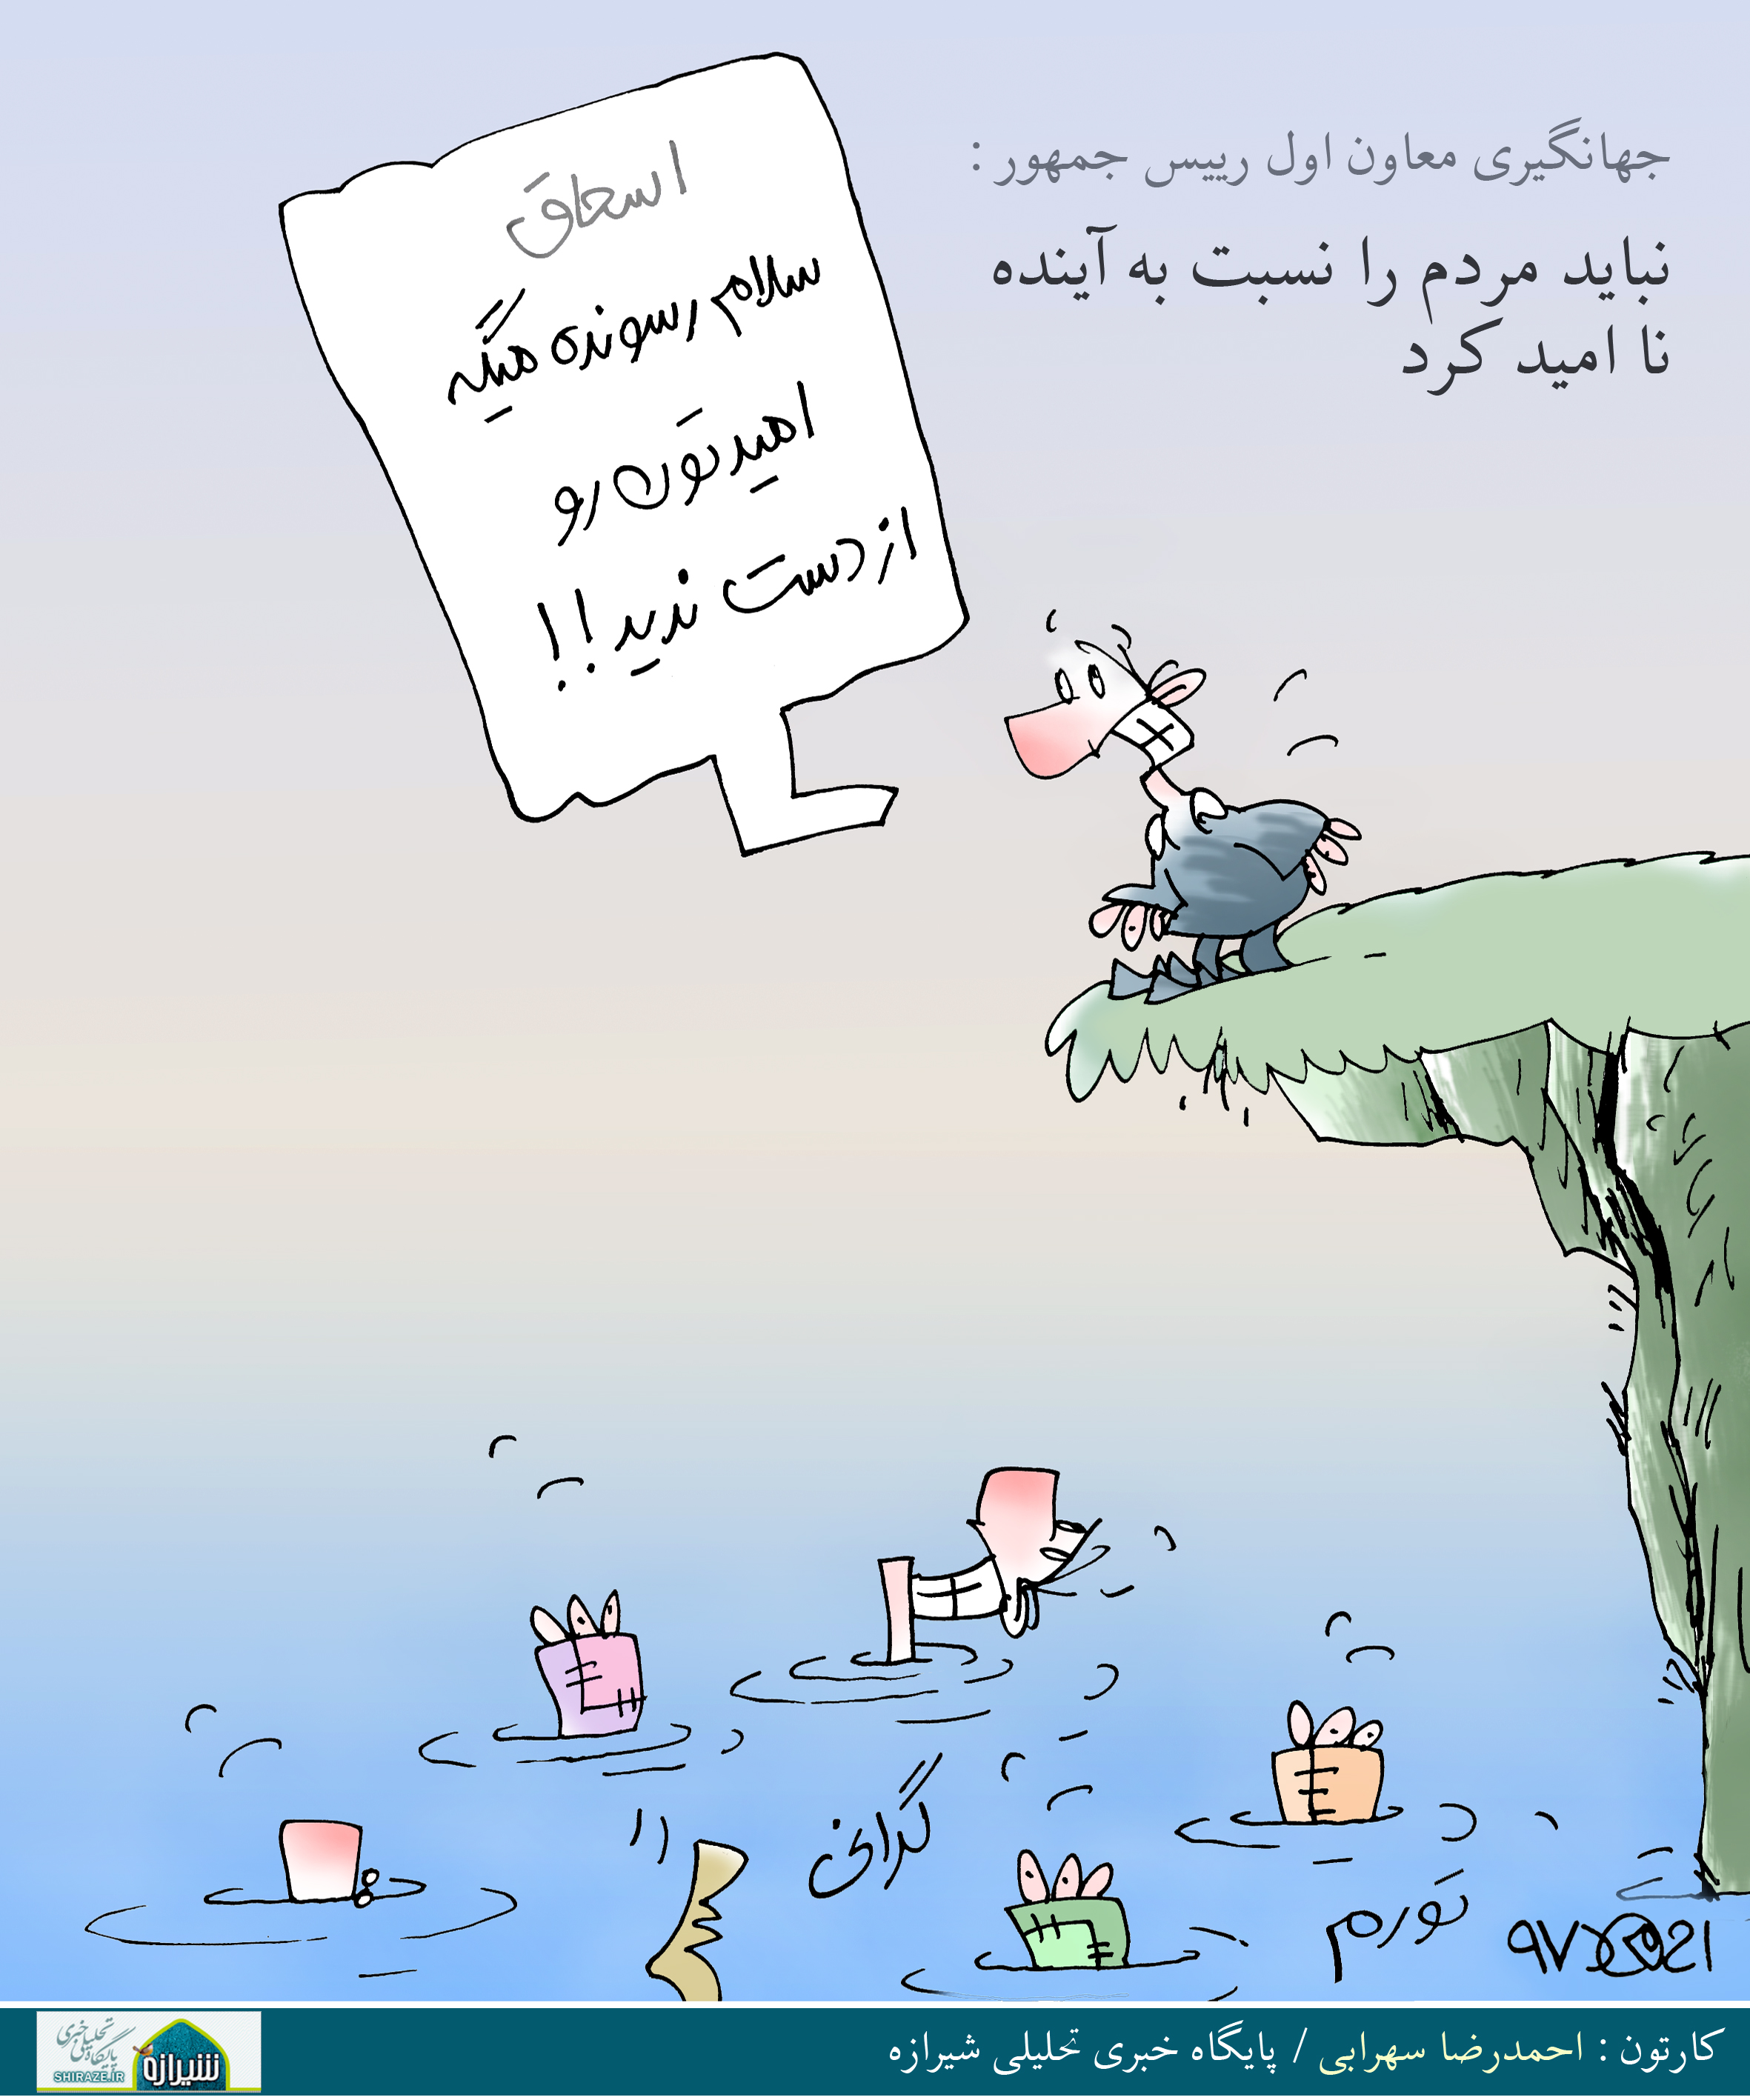 کاریکاتور شیرازه؛ اسحاق سلام رسوند!